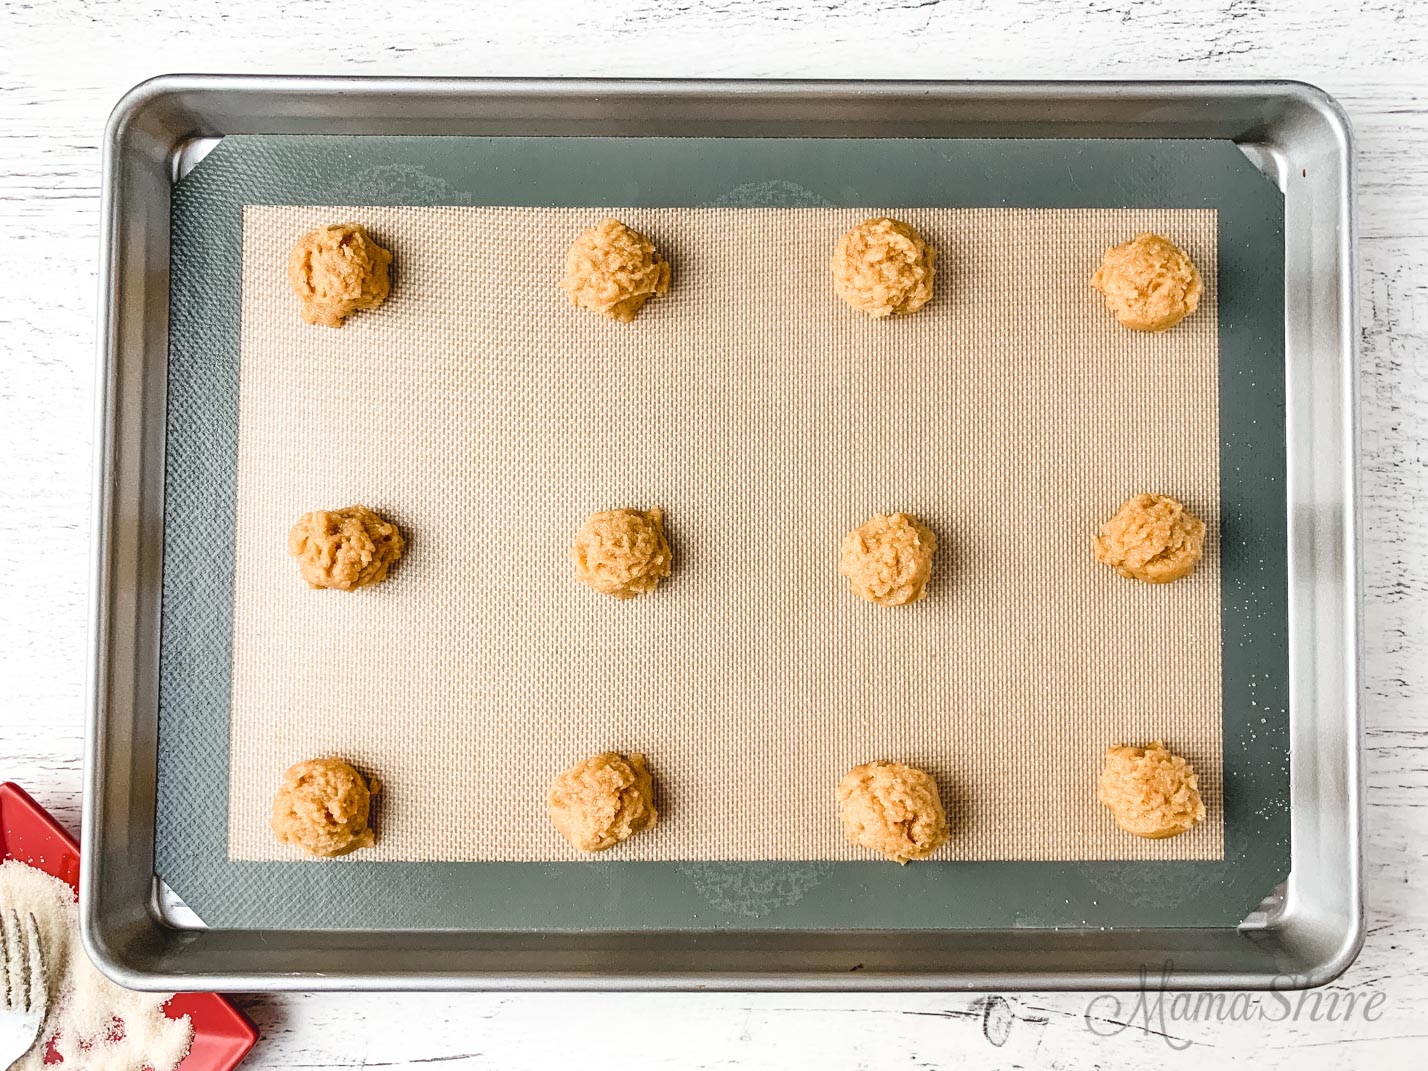 Peanut butter cookie dough on a baking sheet.